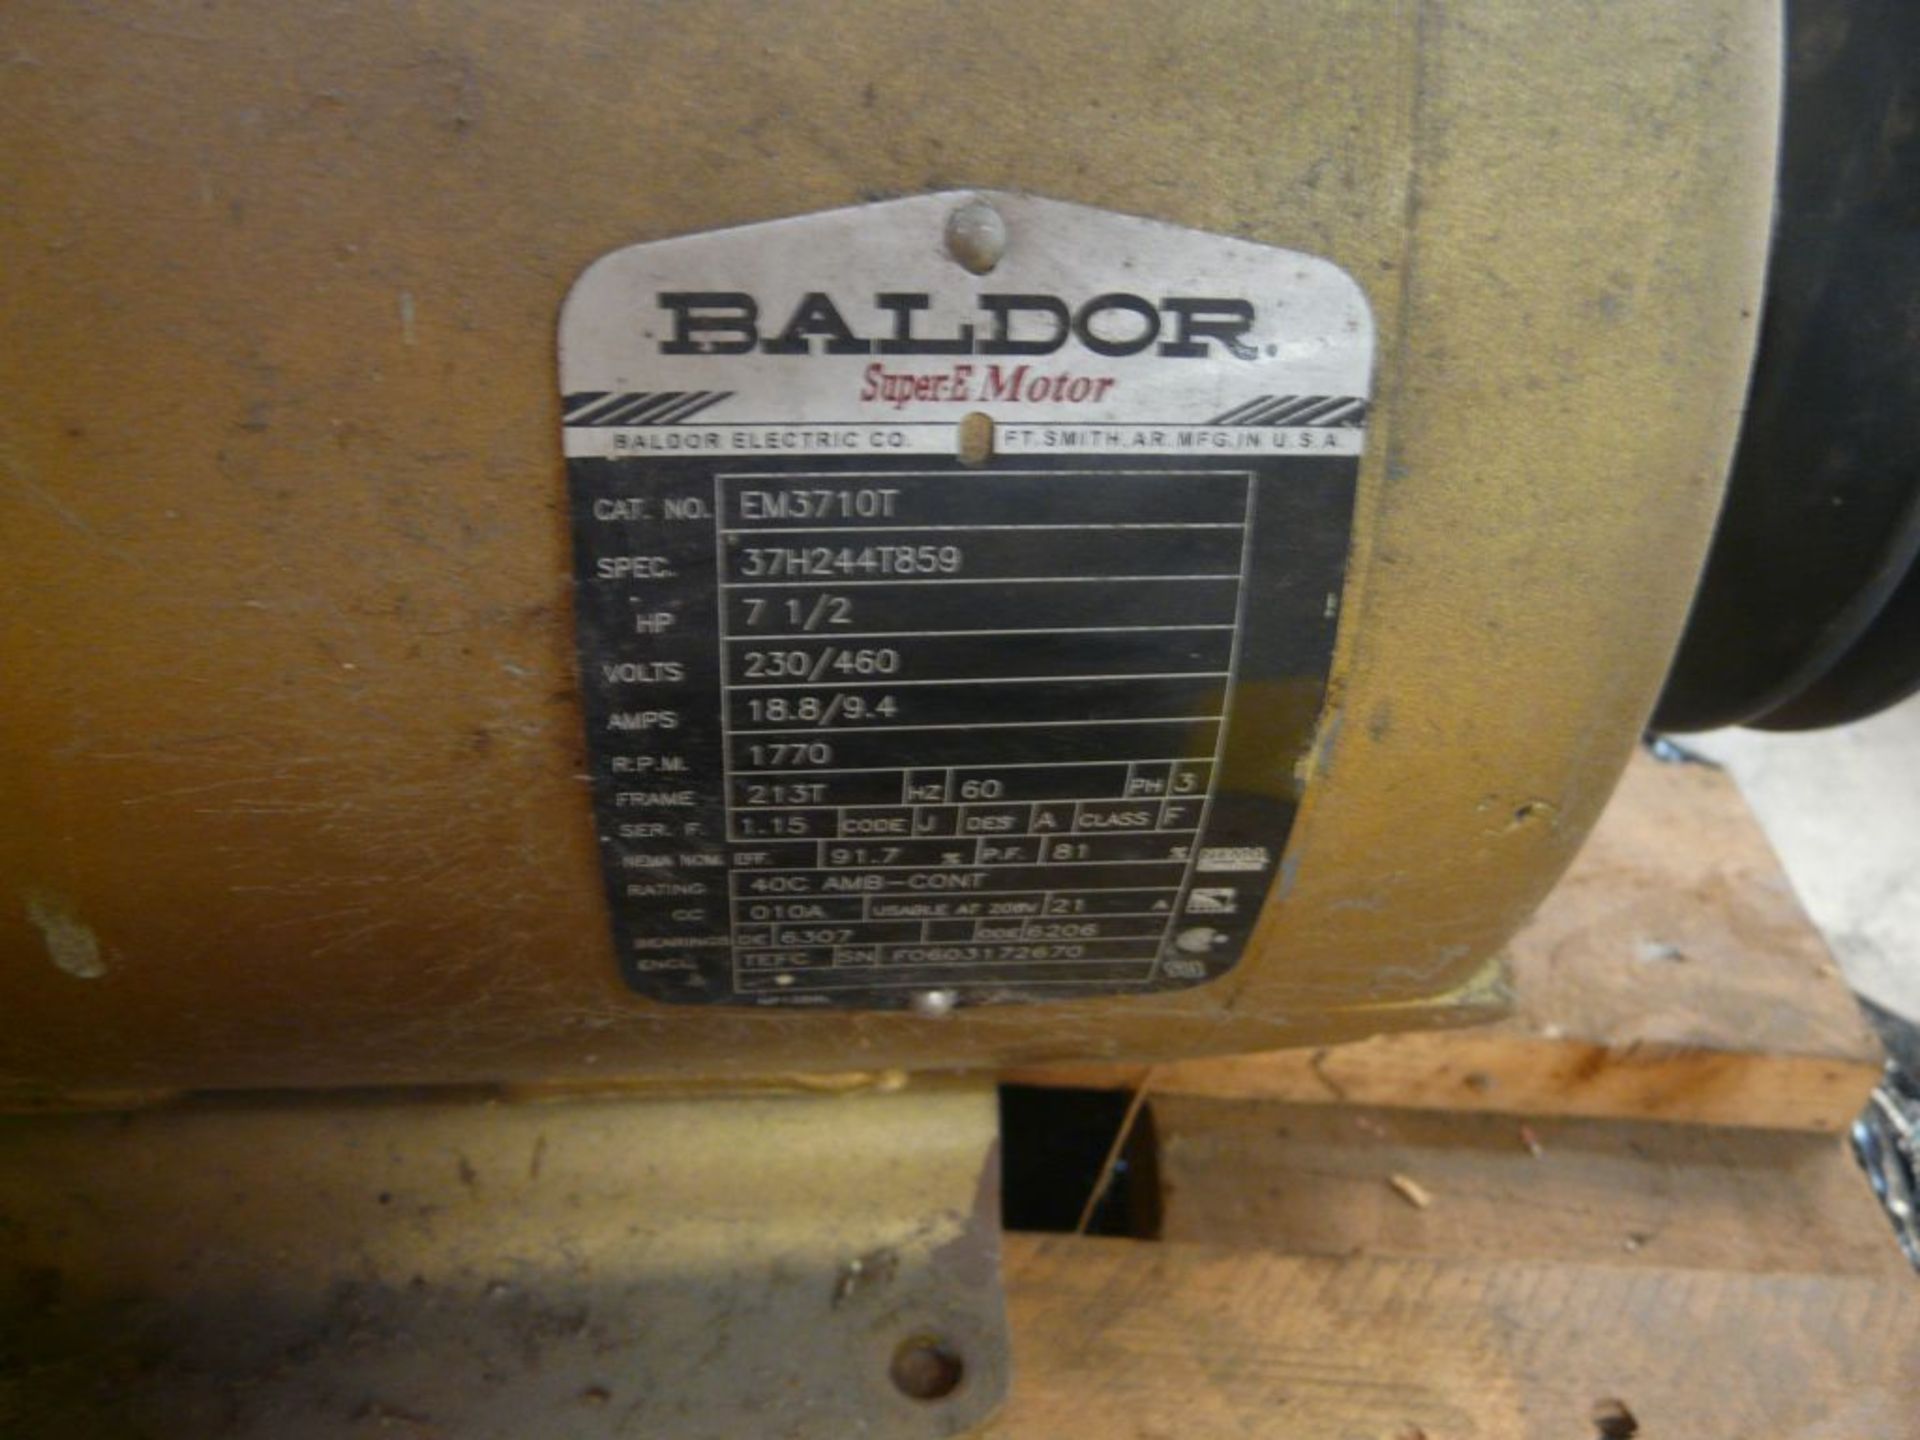 Baldor 7.5 HP Super-E Motor - Cat No. EM3710T; 7.5 HP; 230/460V; 1770 RPM; Frame: 213T; 3PH - Image 5 of 5